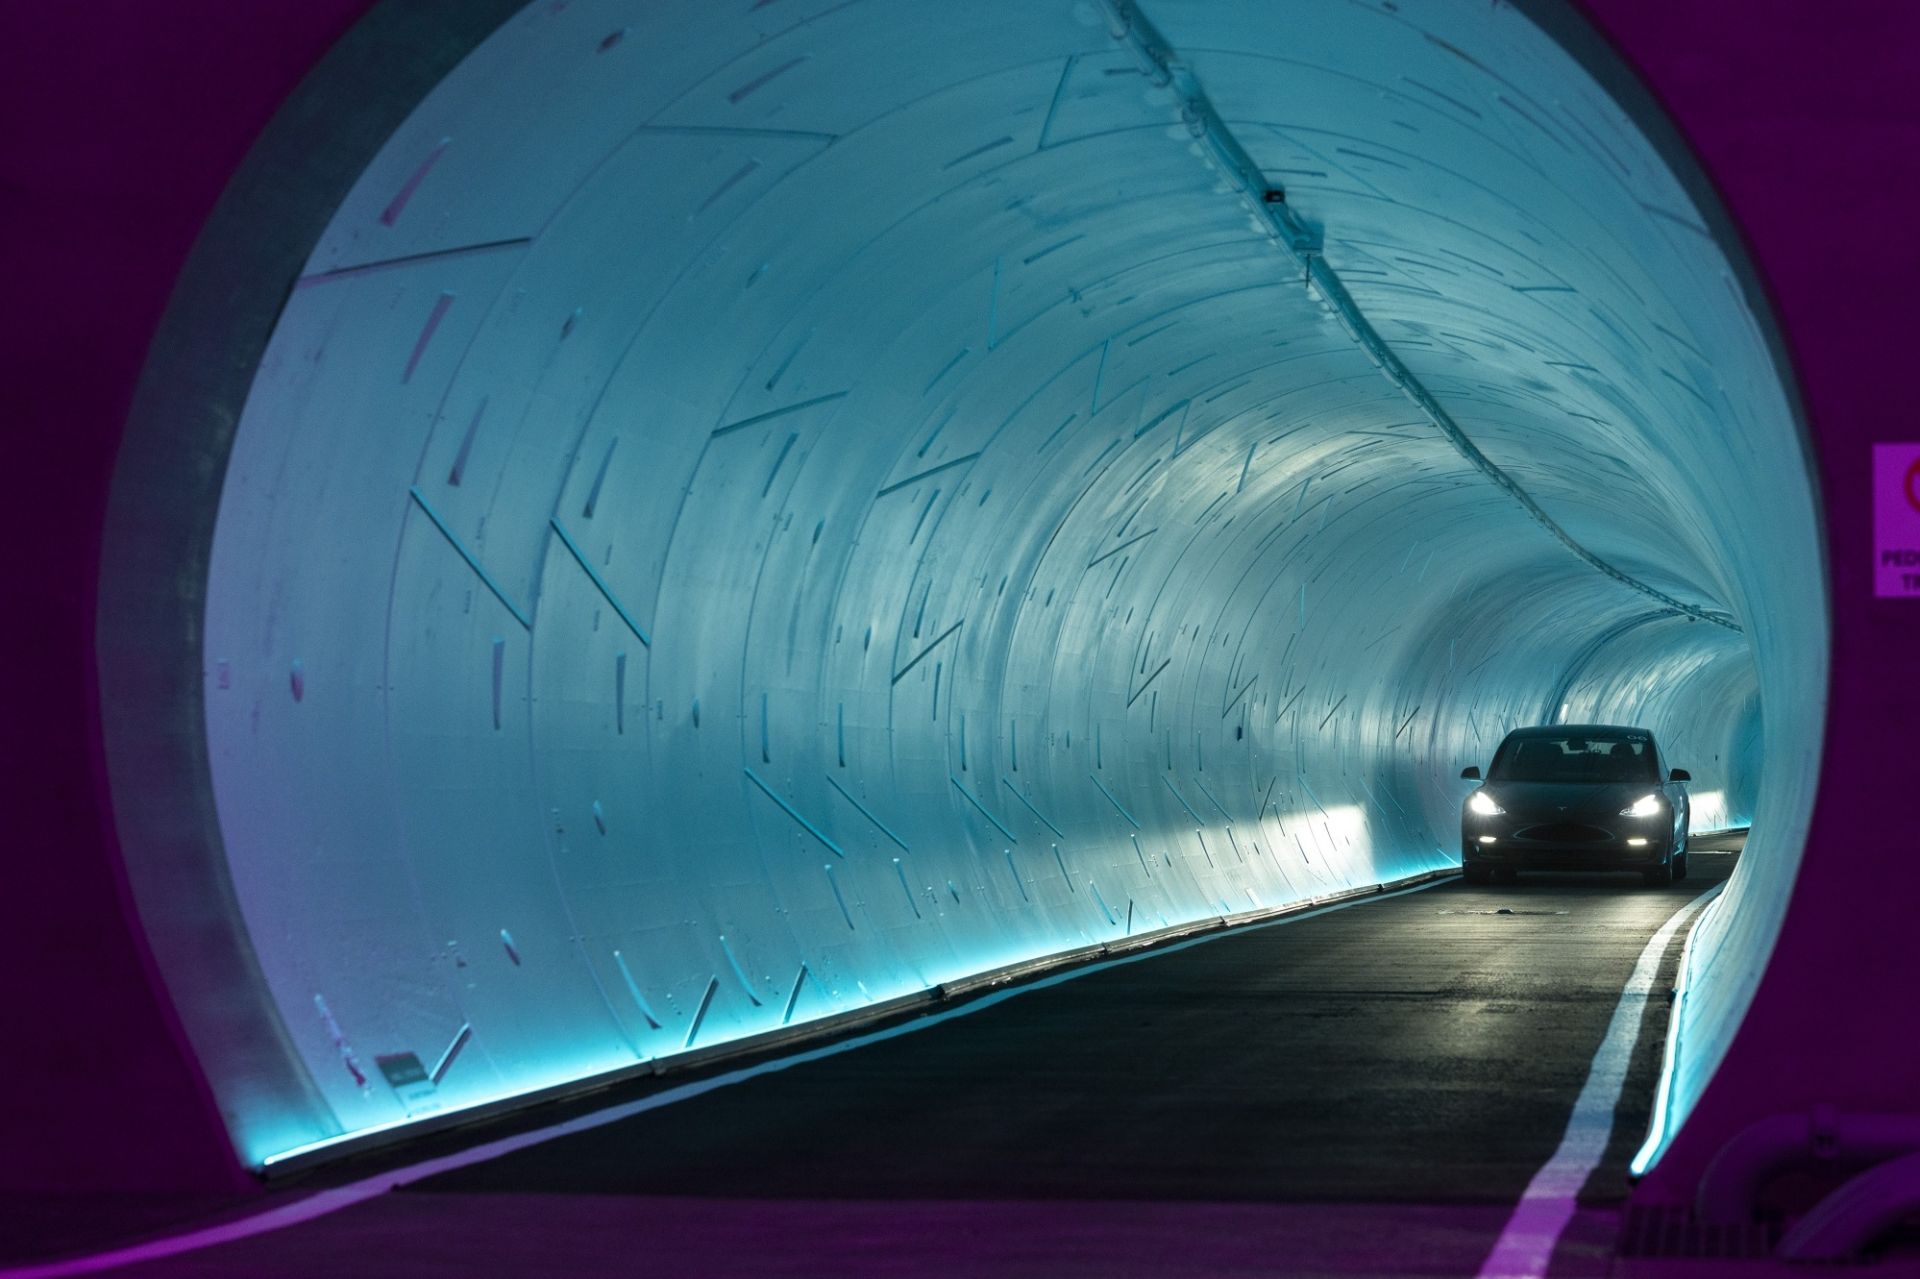 خودرو تسلا در تونل شرکت بورینگ